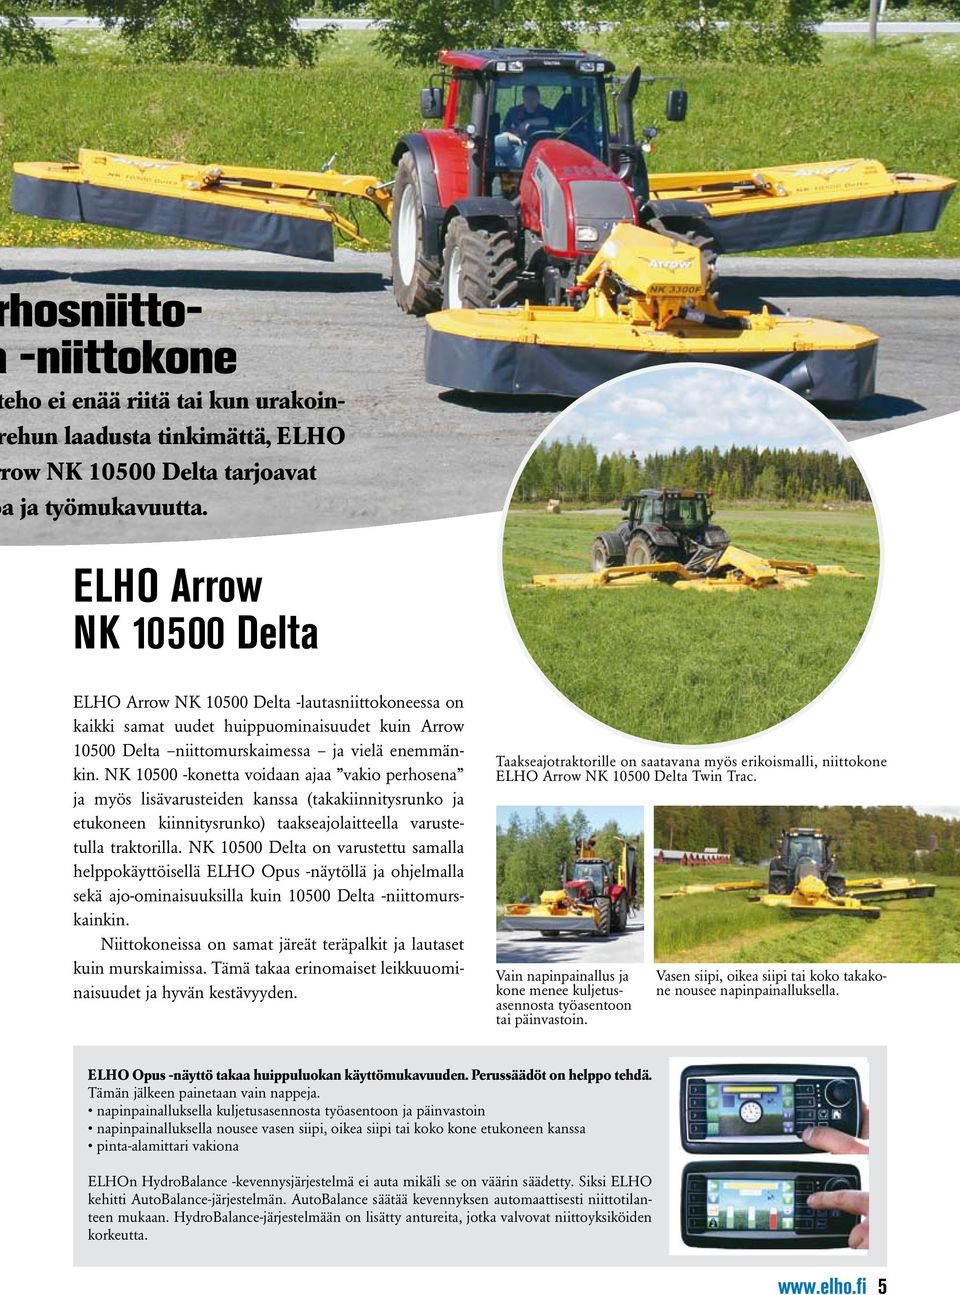 NK 10500 -konetta voidaan ajaa vakio perhosena ja myös lisävarusteiden kanssa (takakiinnitysrunko ja etukoneen kiinnitysrunko) taakseajolaitteella varustetulla traktorilla.